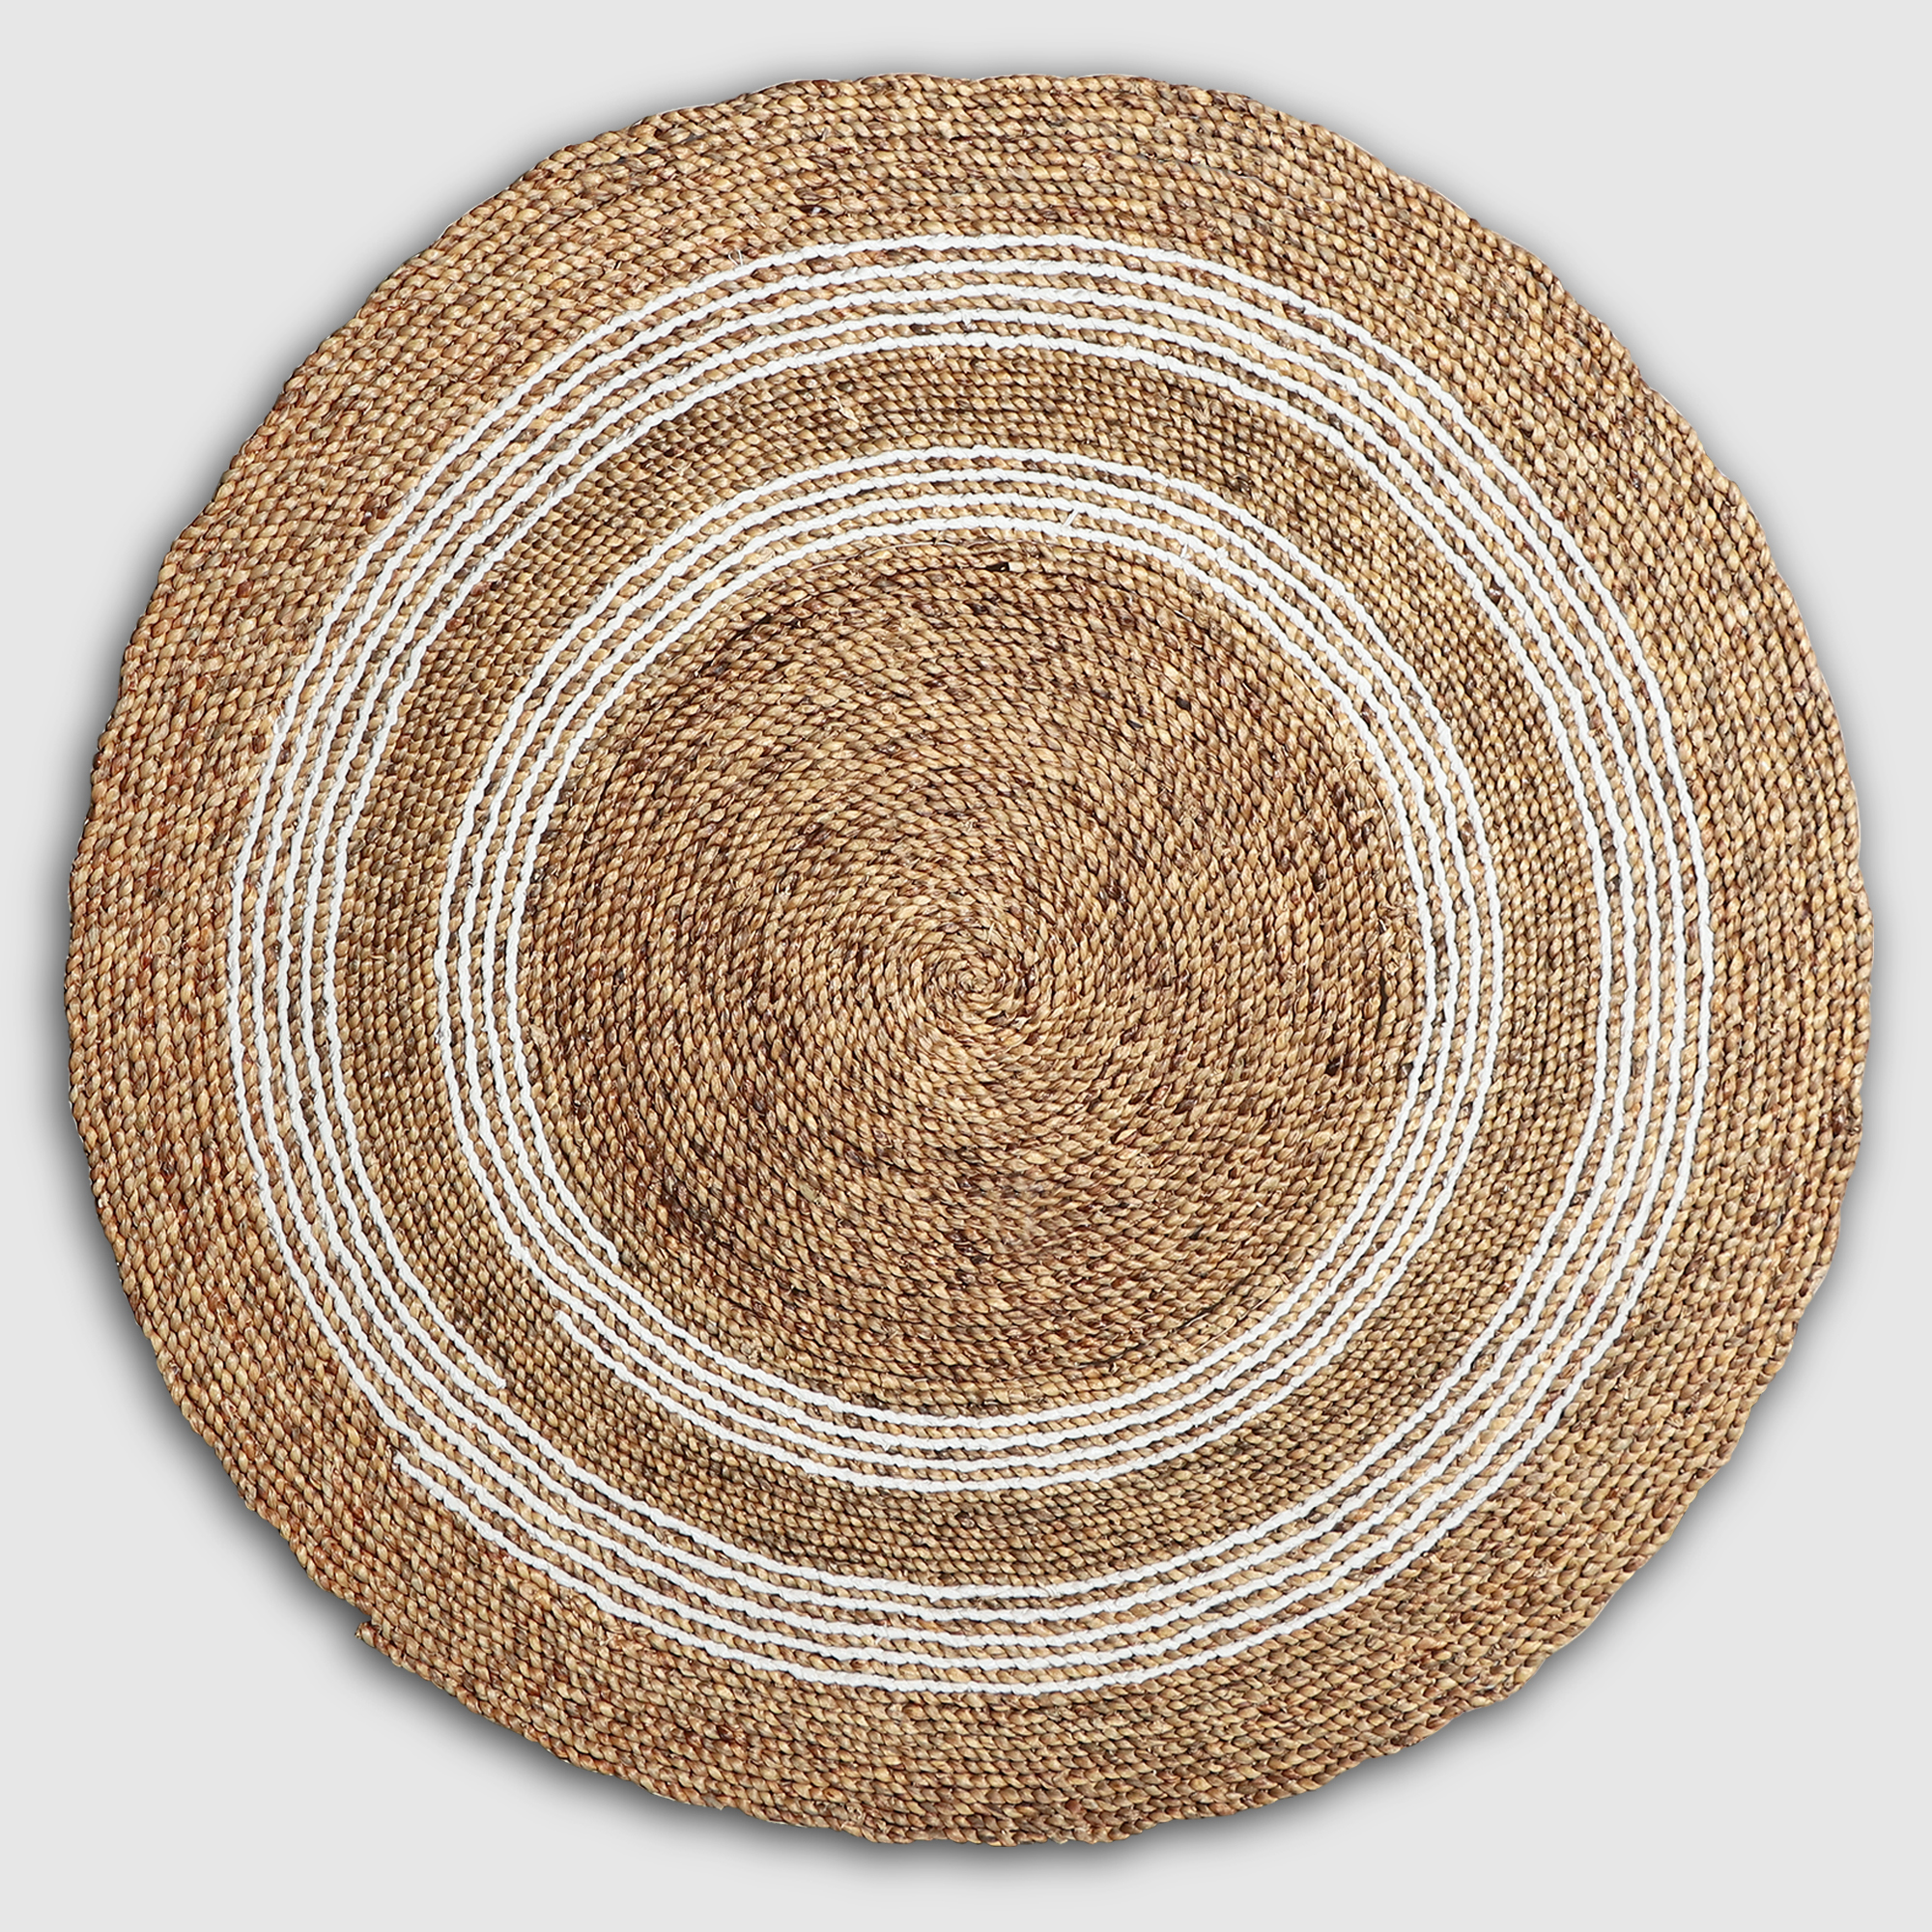 Коврик Rattan grand rug tenun nagan коричневый с бежевыми полосами, д 150 см